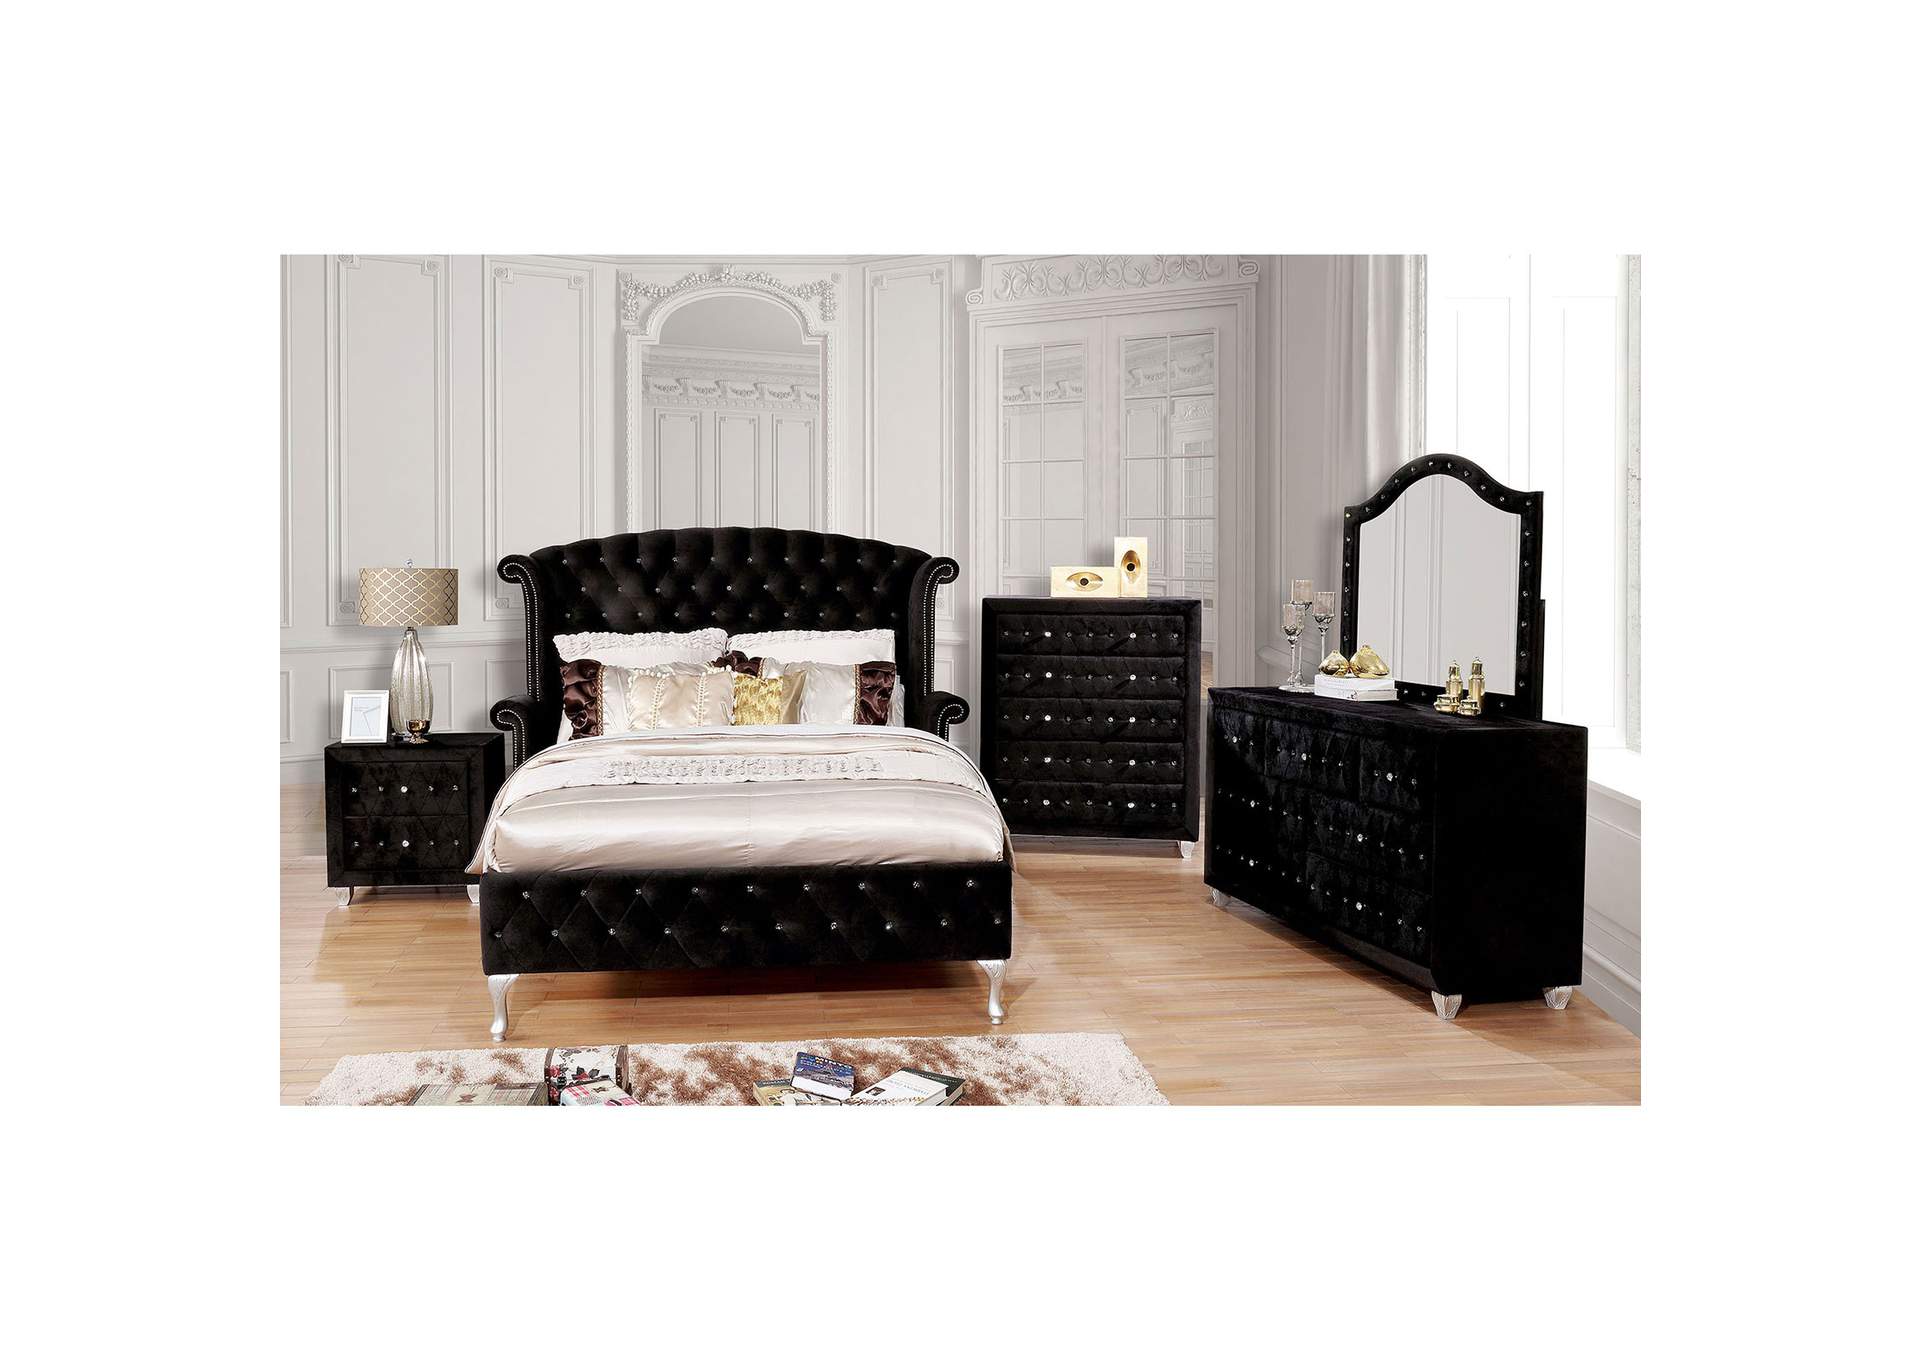 Alzire Black Upholstered Eastern King Platform Bed w/Dresser & Mirror,Furniture of America